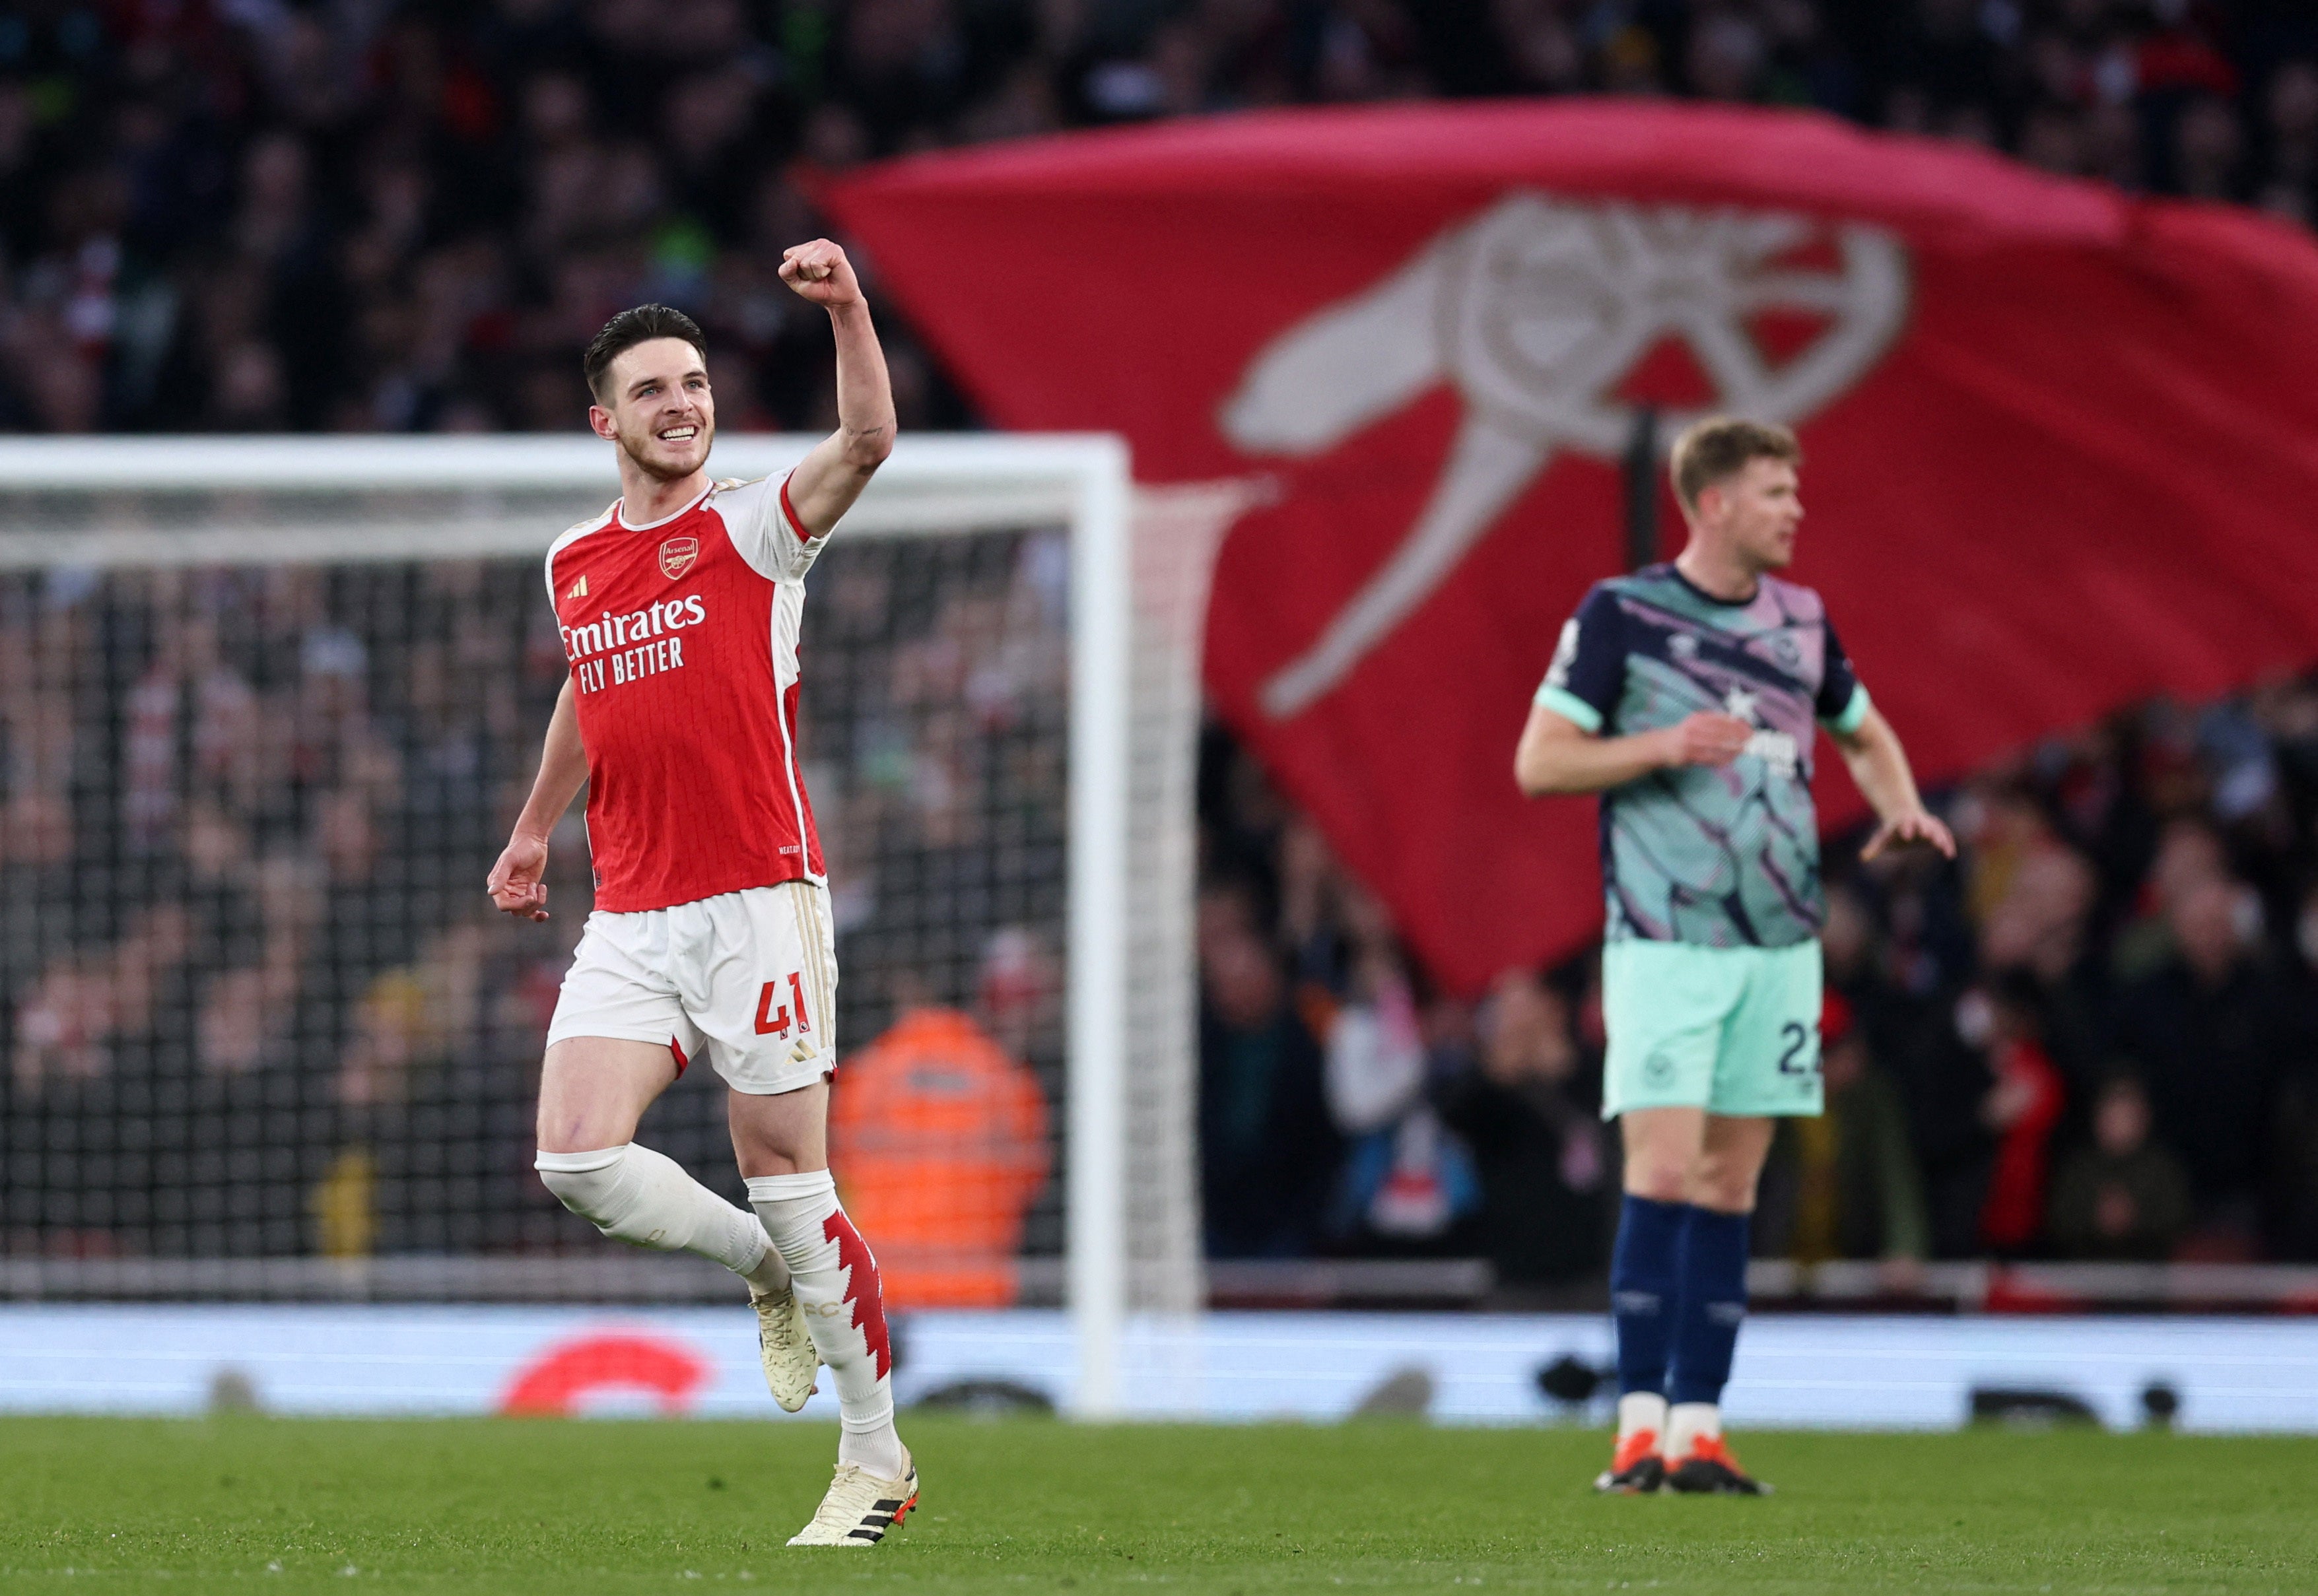 Arsenal's Declan Rice celebrates scoring at the Emirates